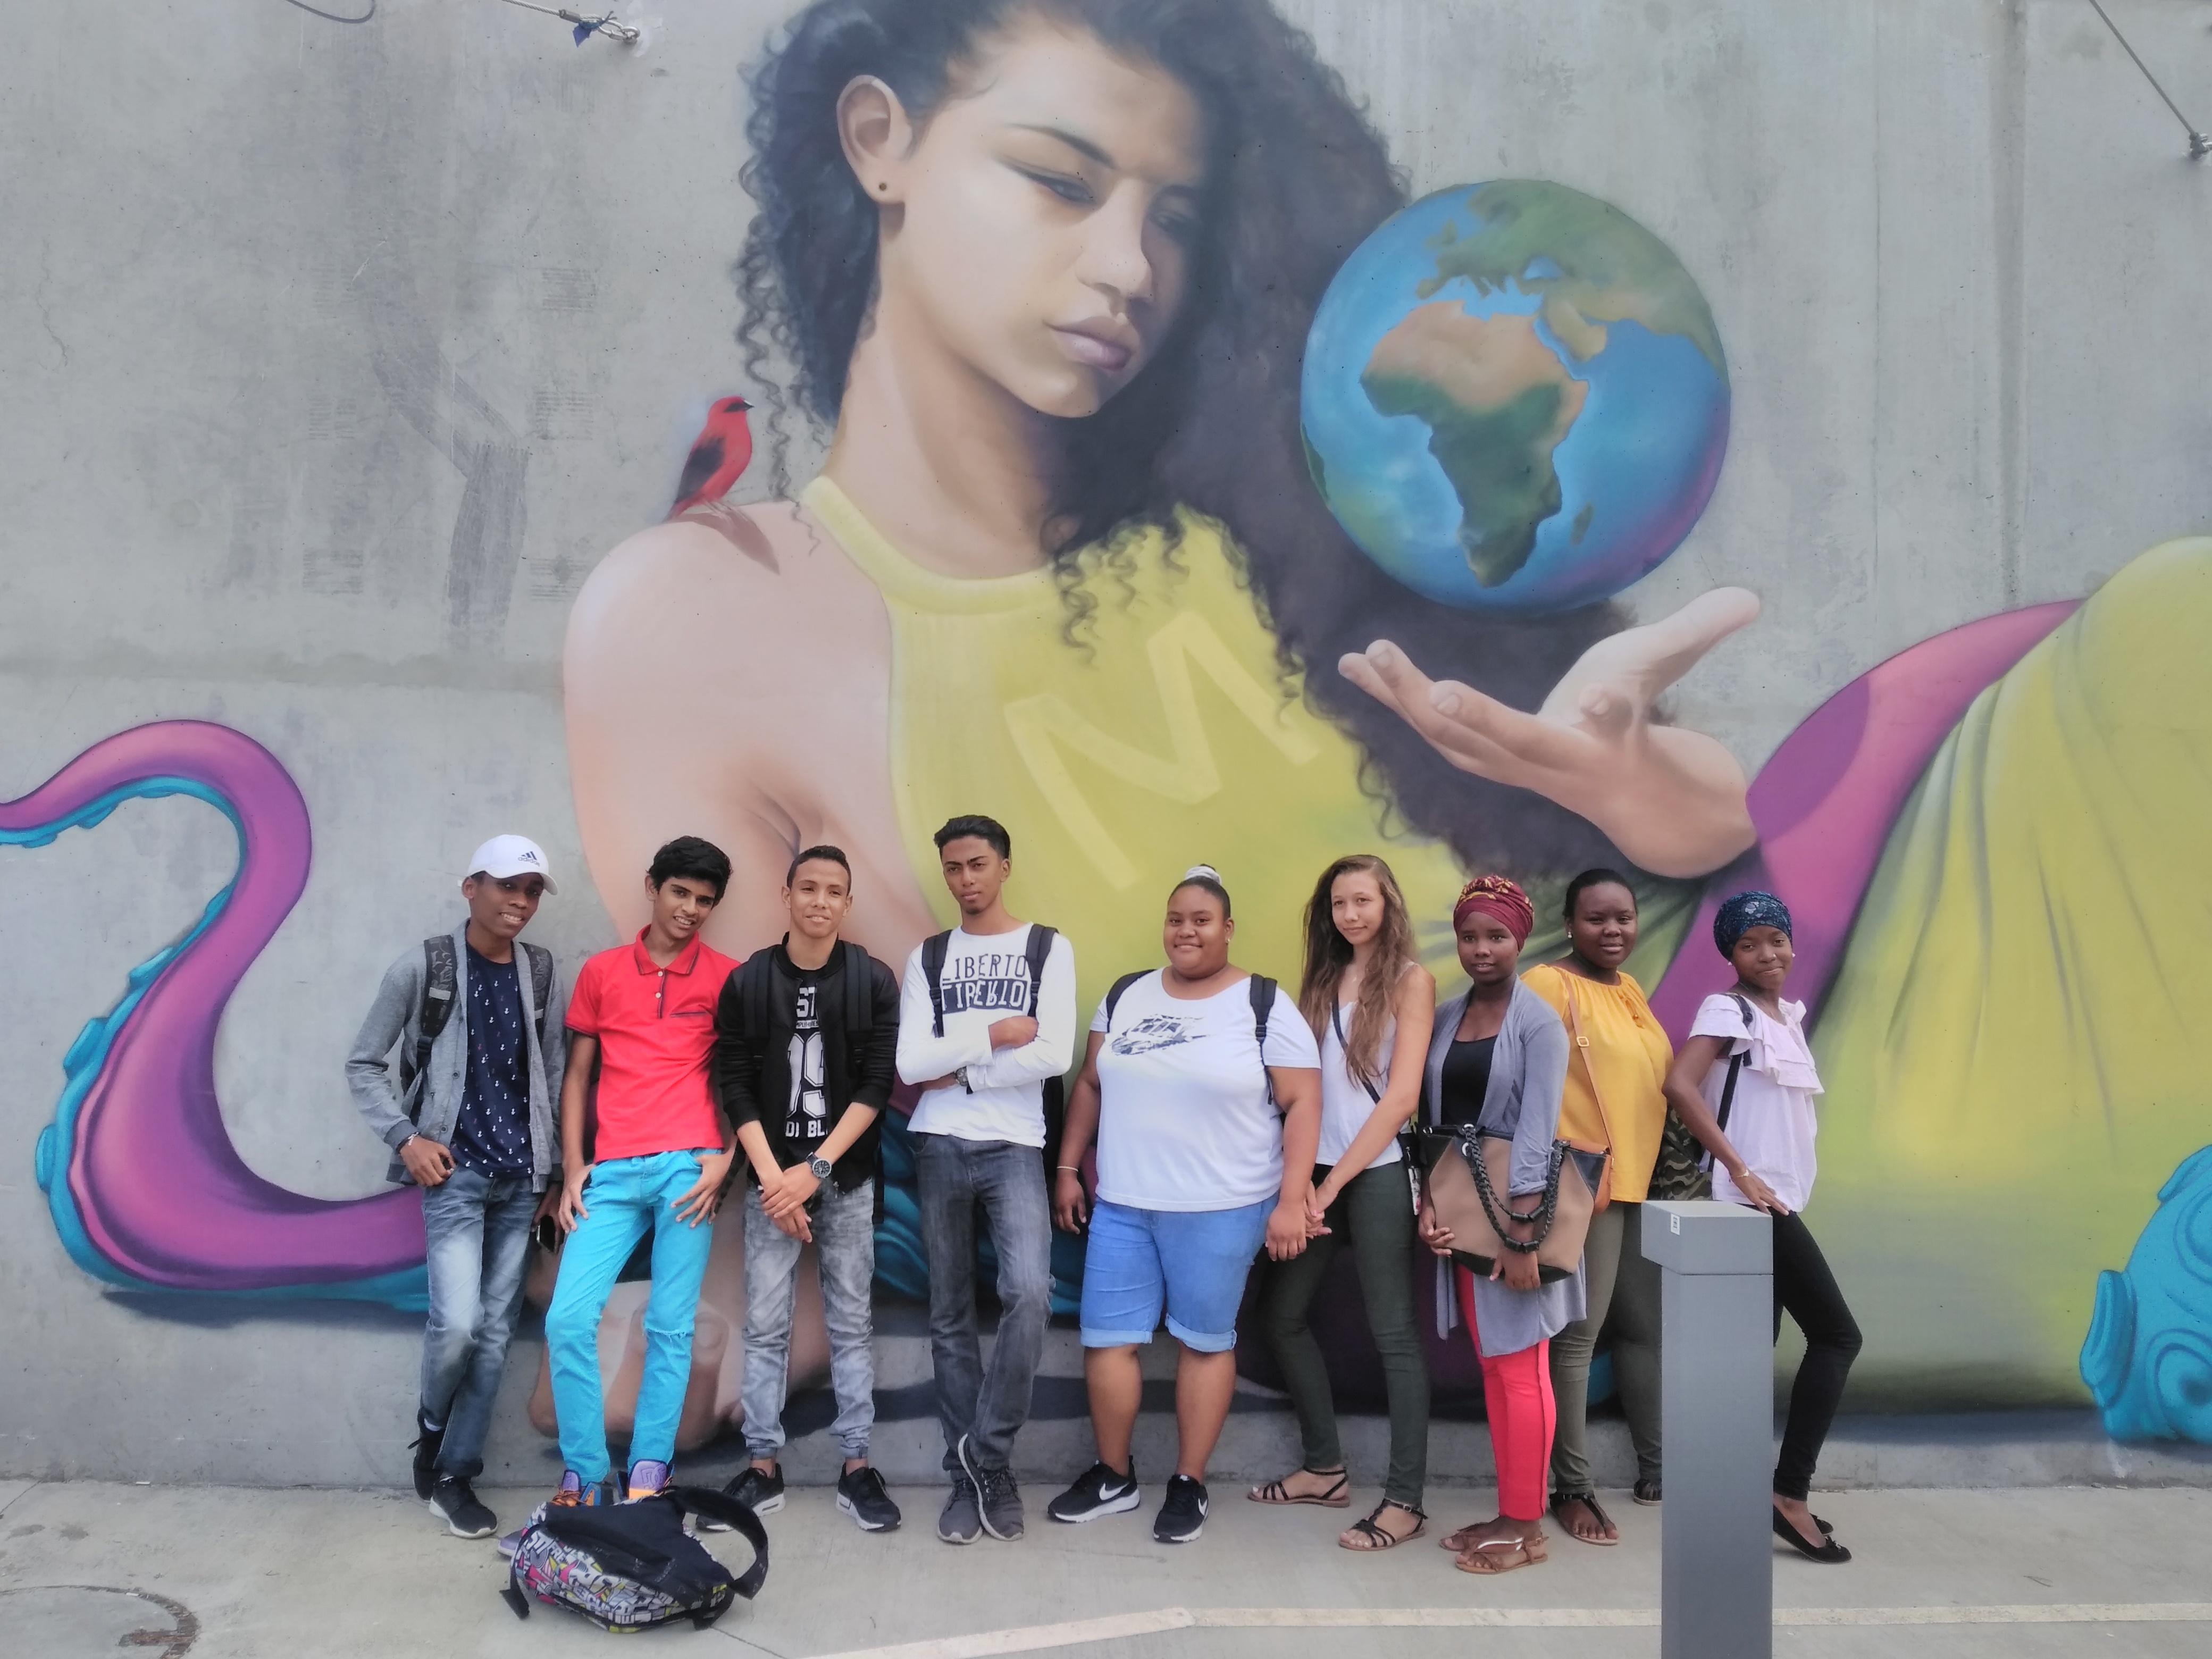 groupe d'élèves posant devant une murale des murs extérieurs de la cité des arts